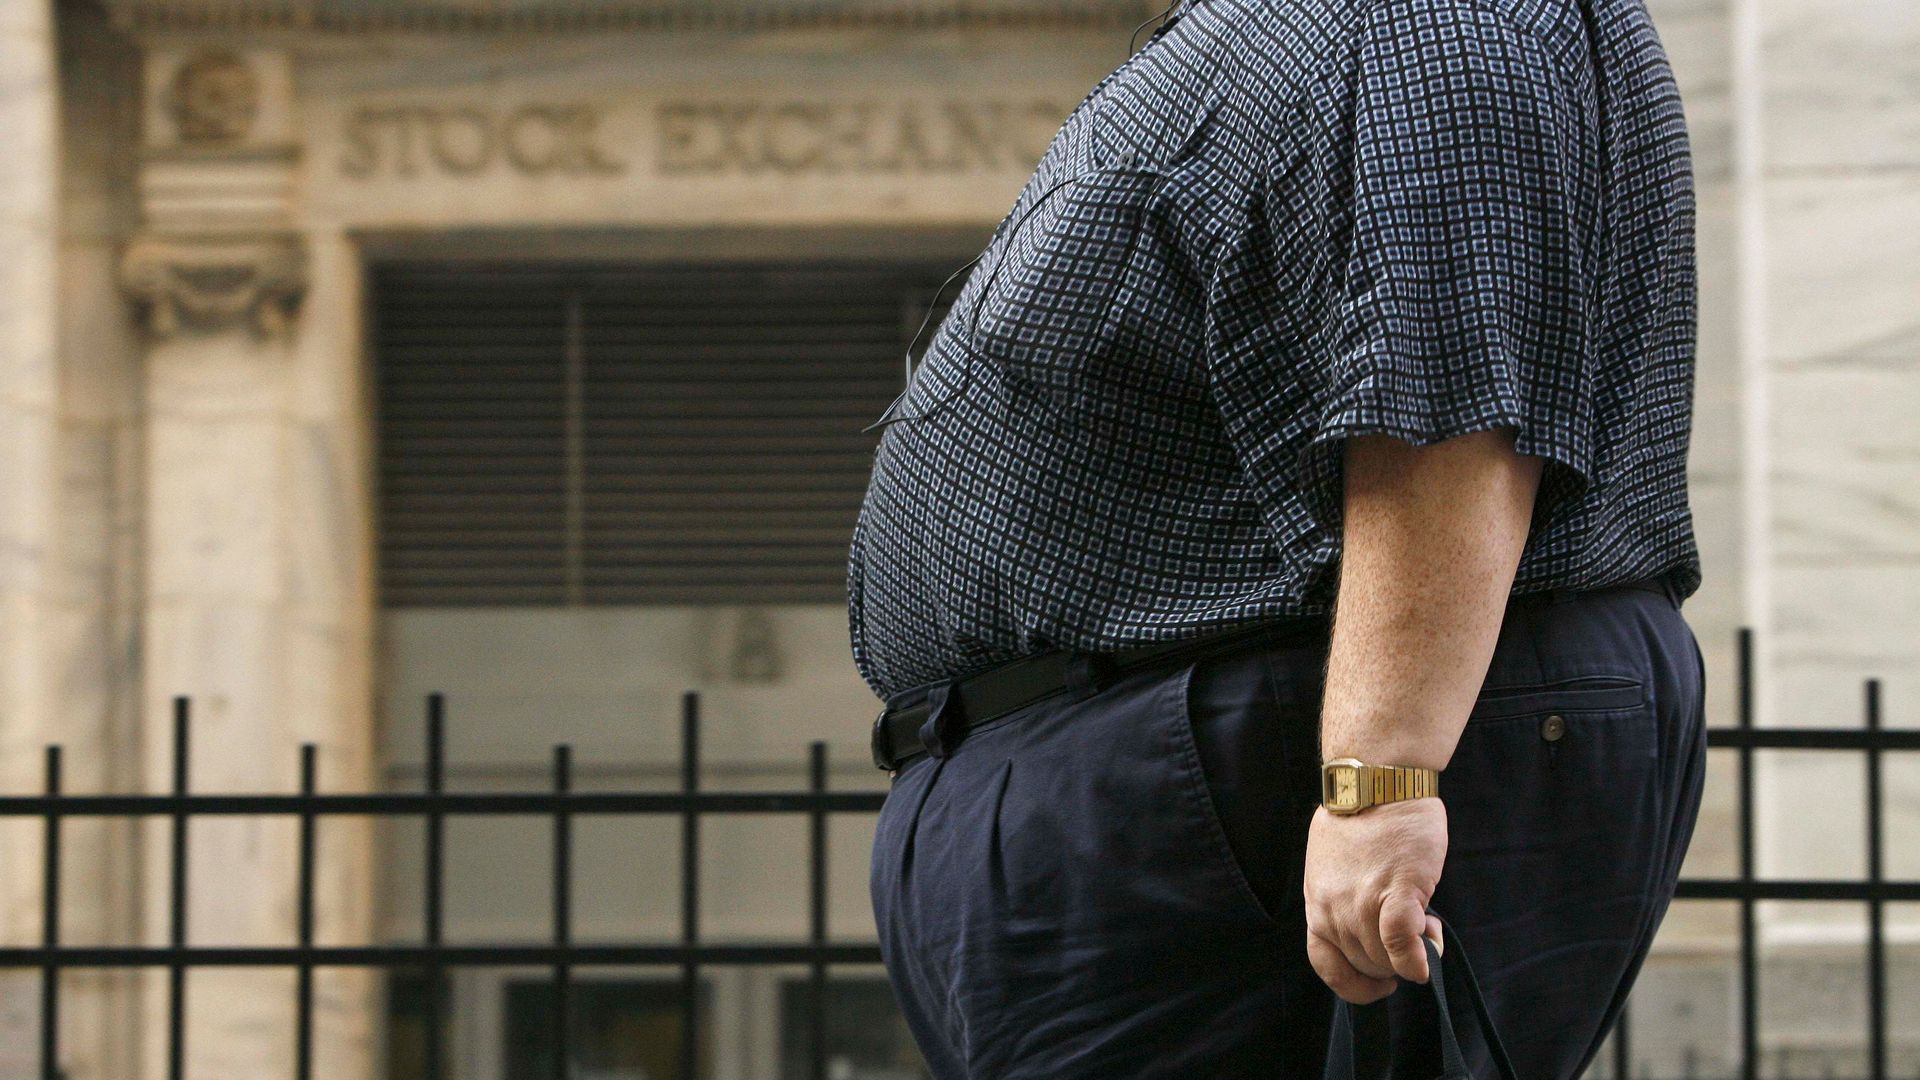 mehr als eine milliarde menschen plagt starkes übergewicht